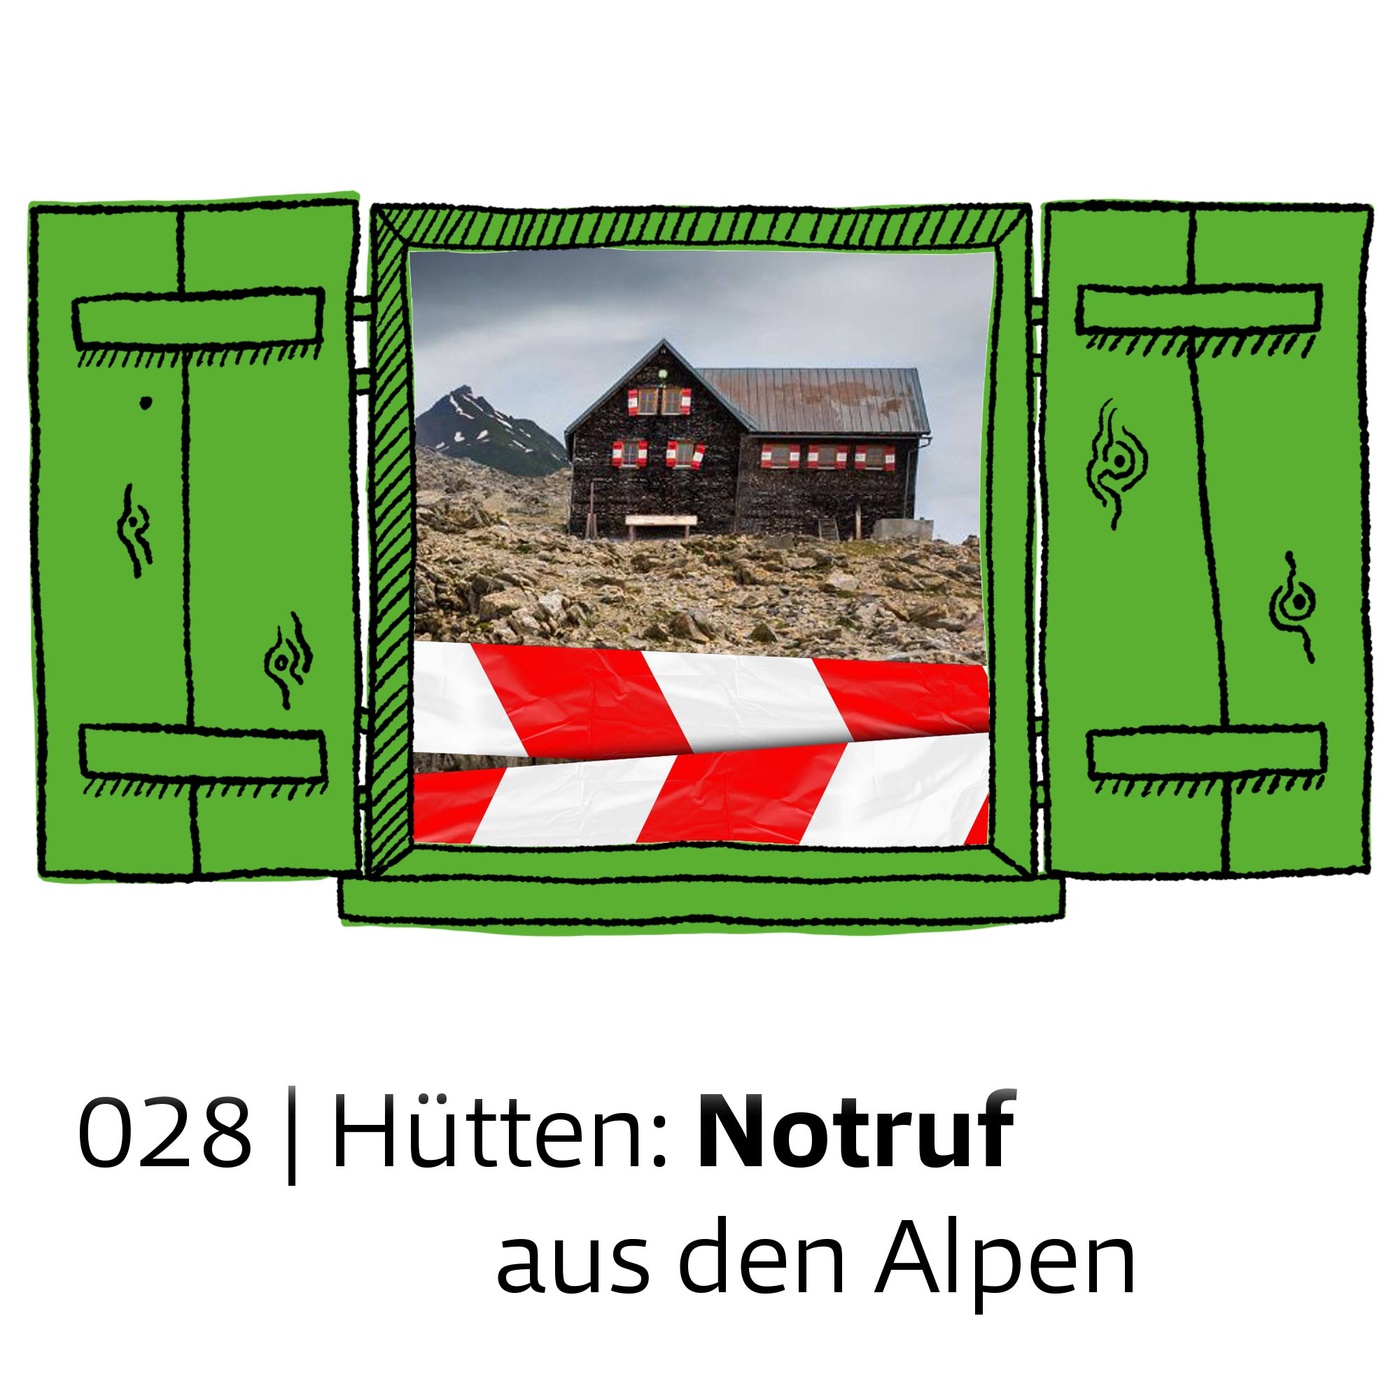 #028 Hütten: Notruf aus den Alpen